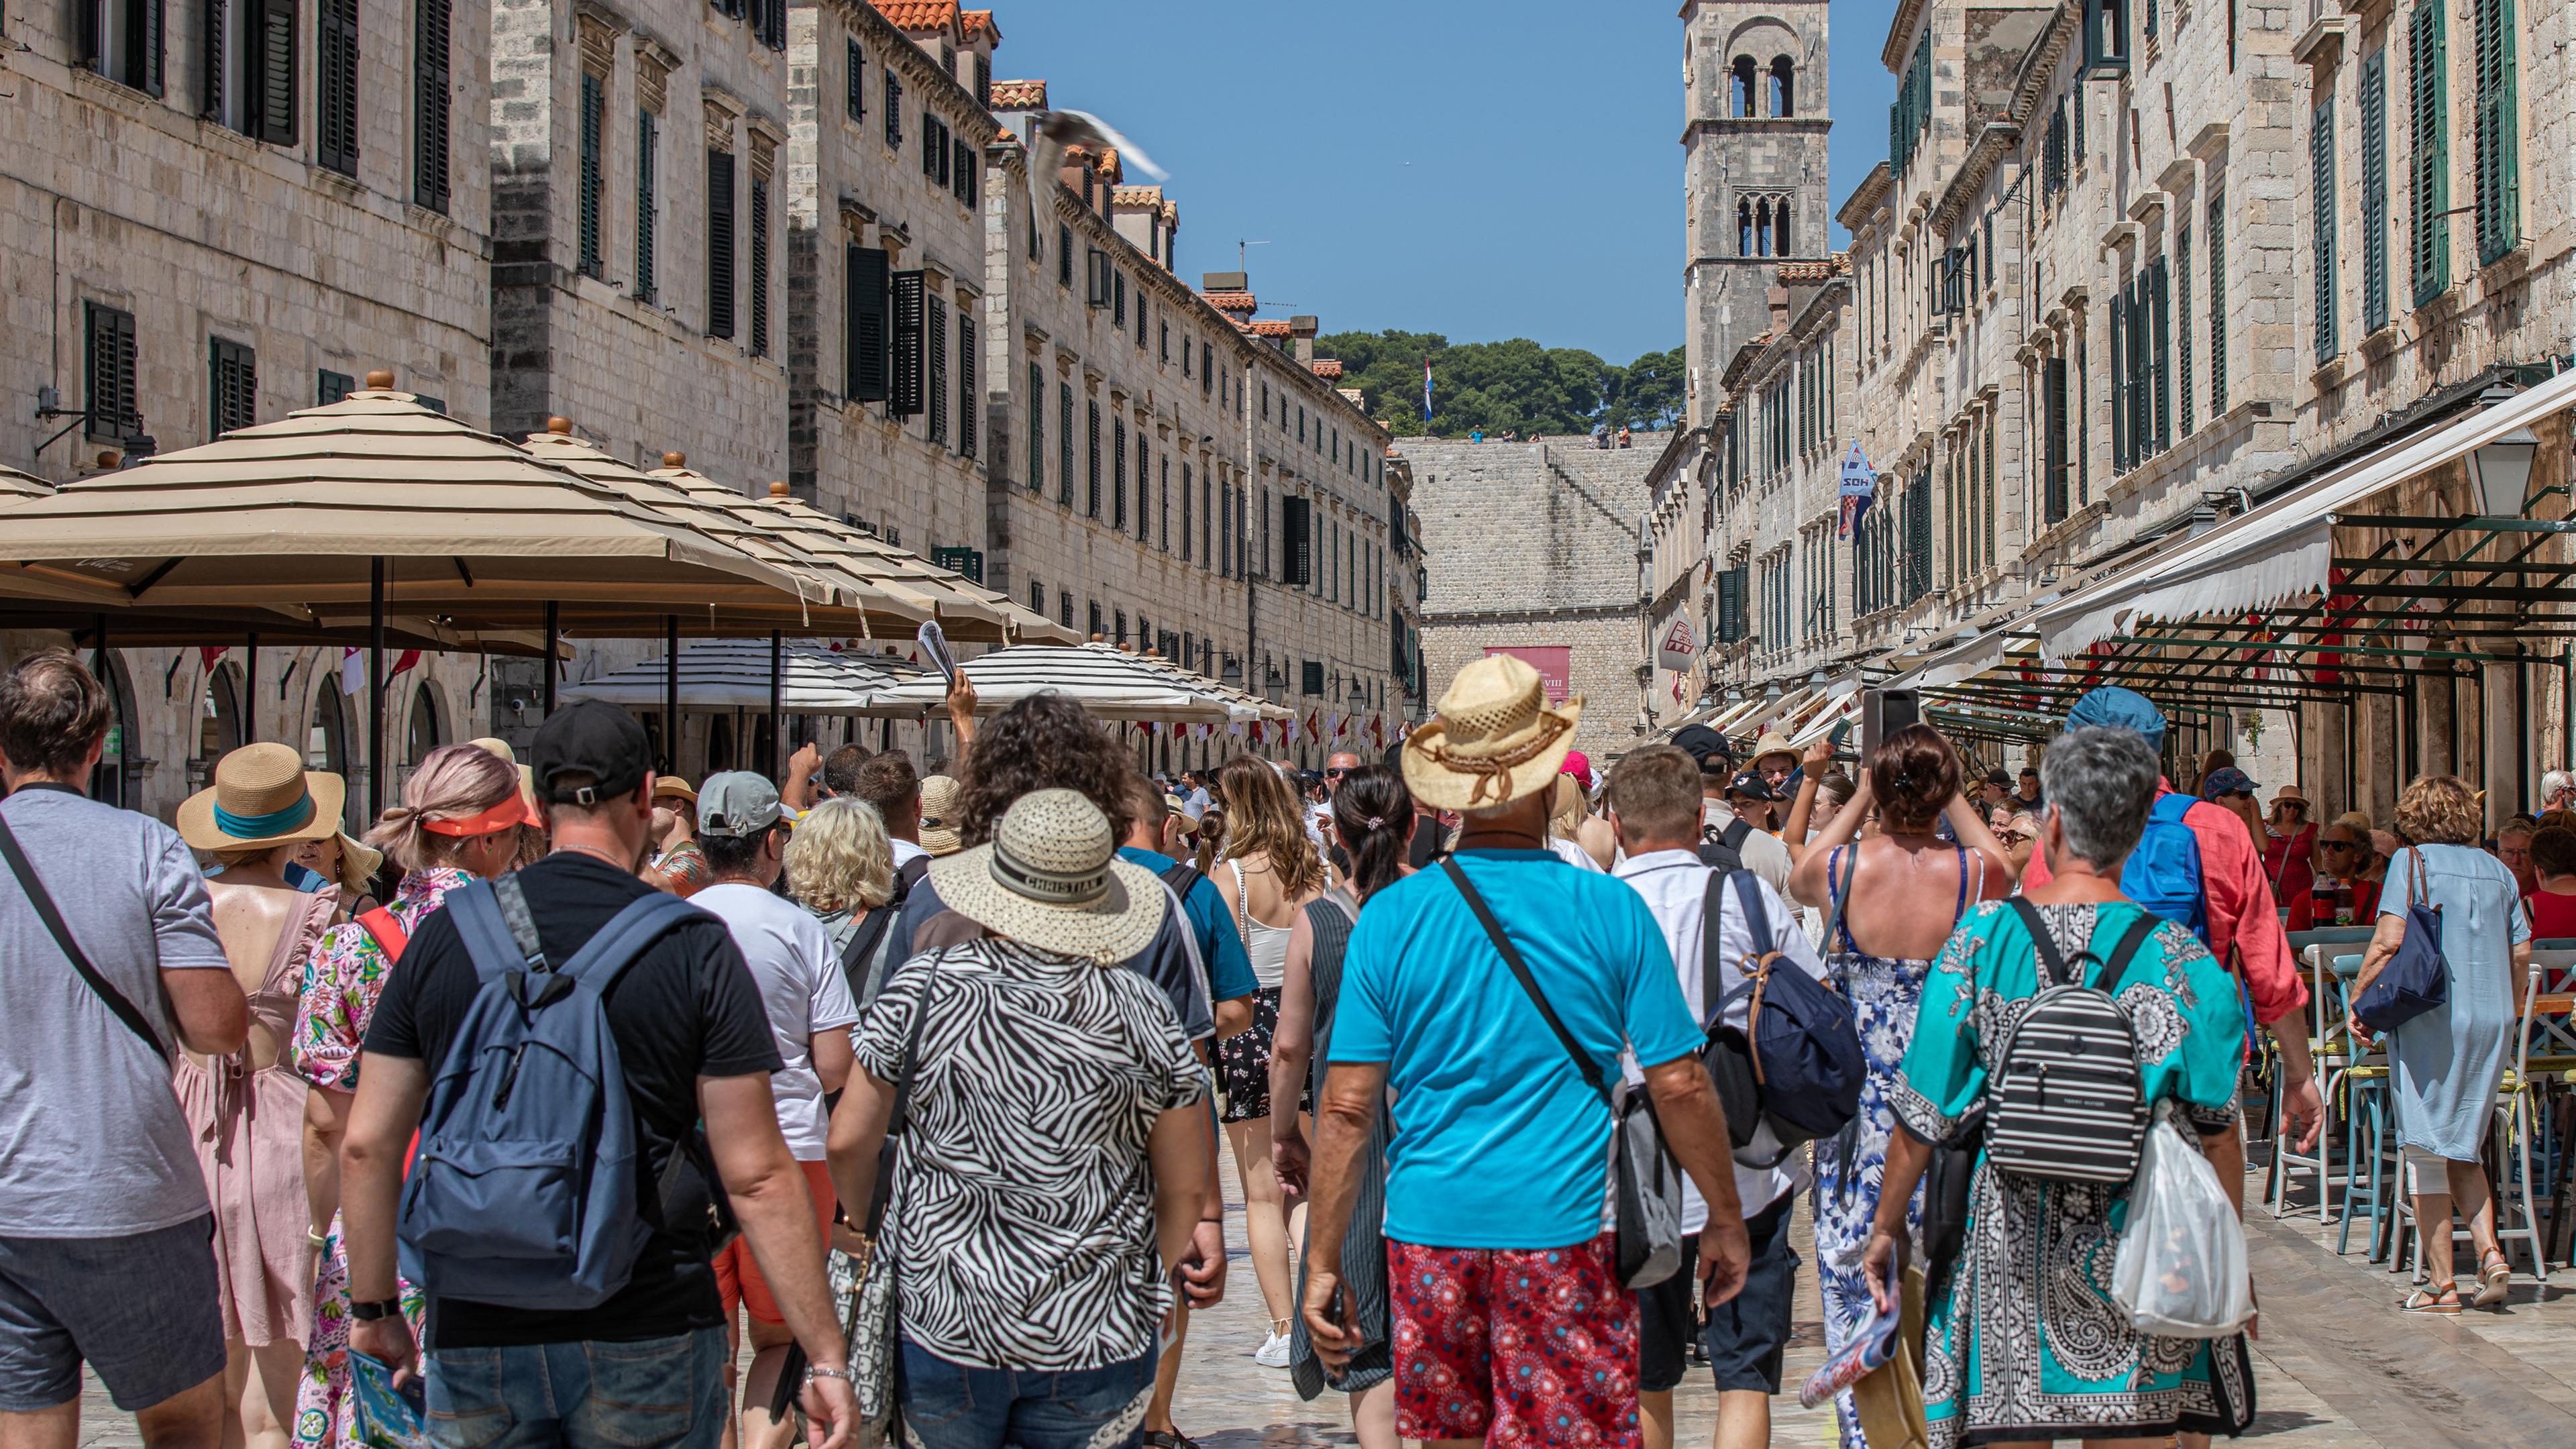 Kroatien, Dubrovnik: Touristen gehen an dem heißen Tag durch eine Geschäftsstraße von Dubrovnik.